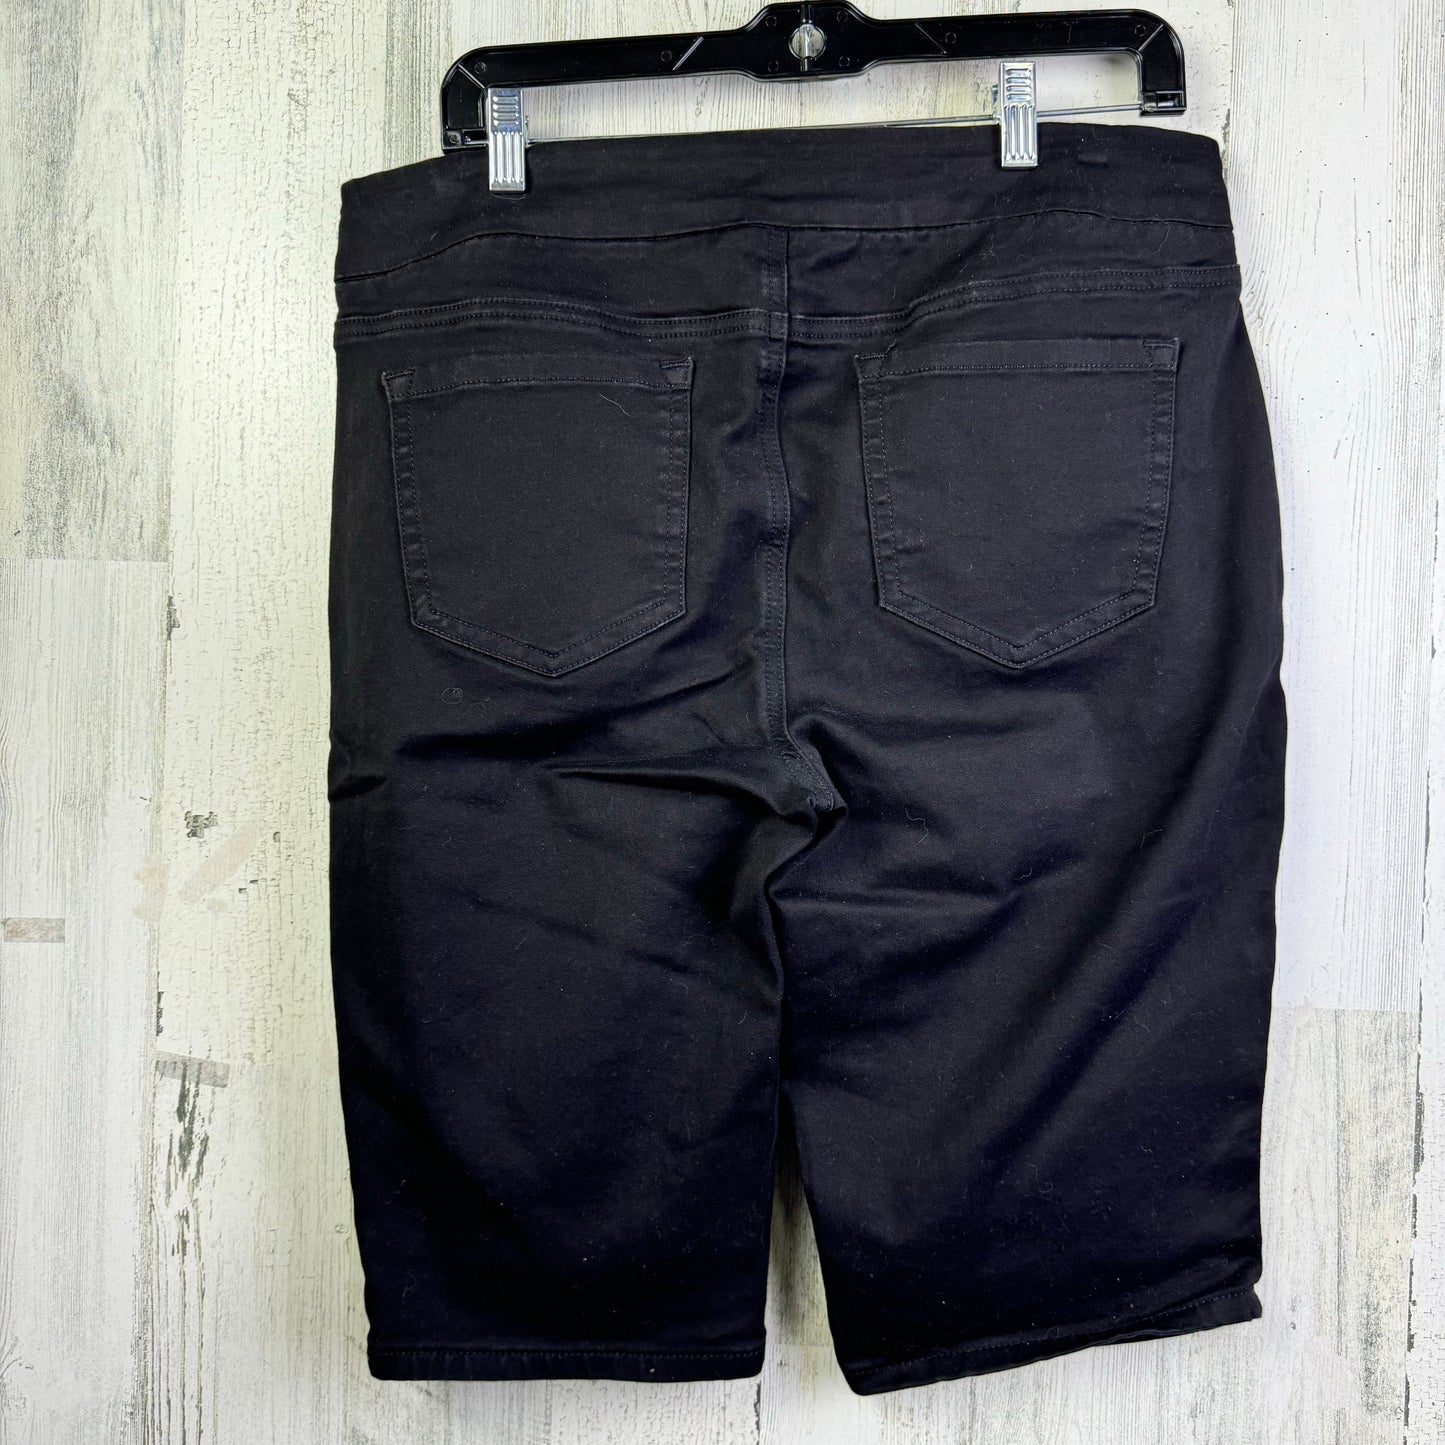 Black Shorts West Bound, Size 14